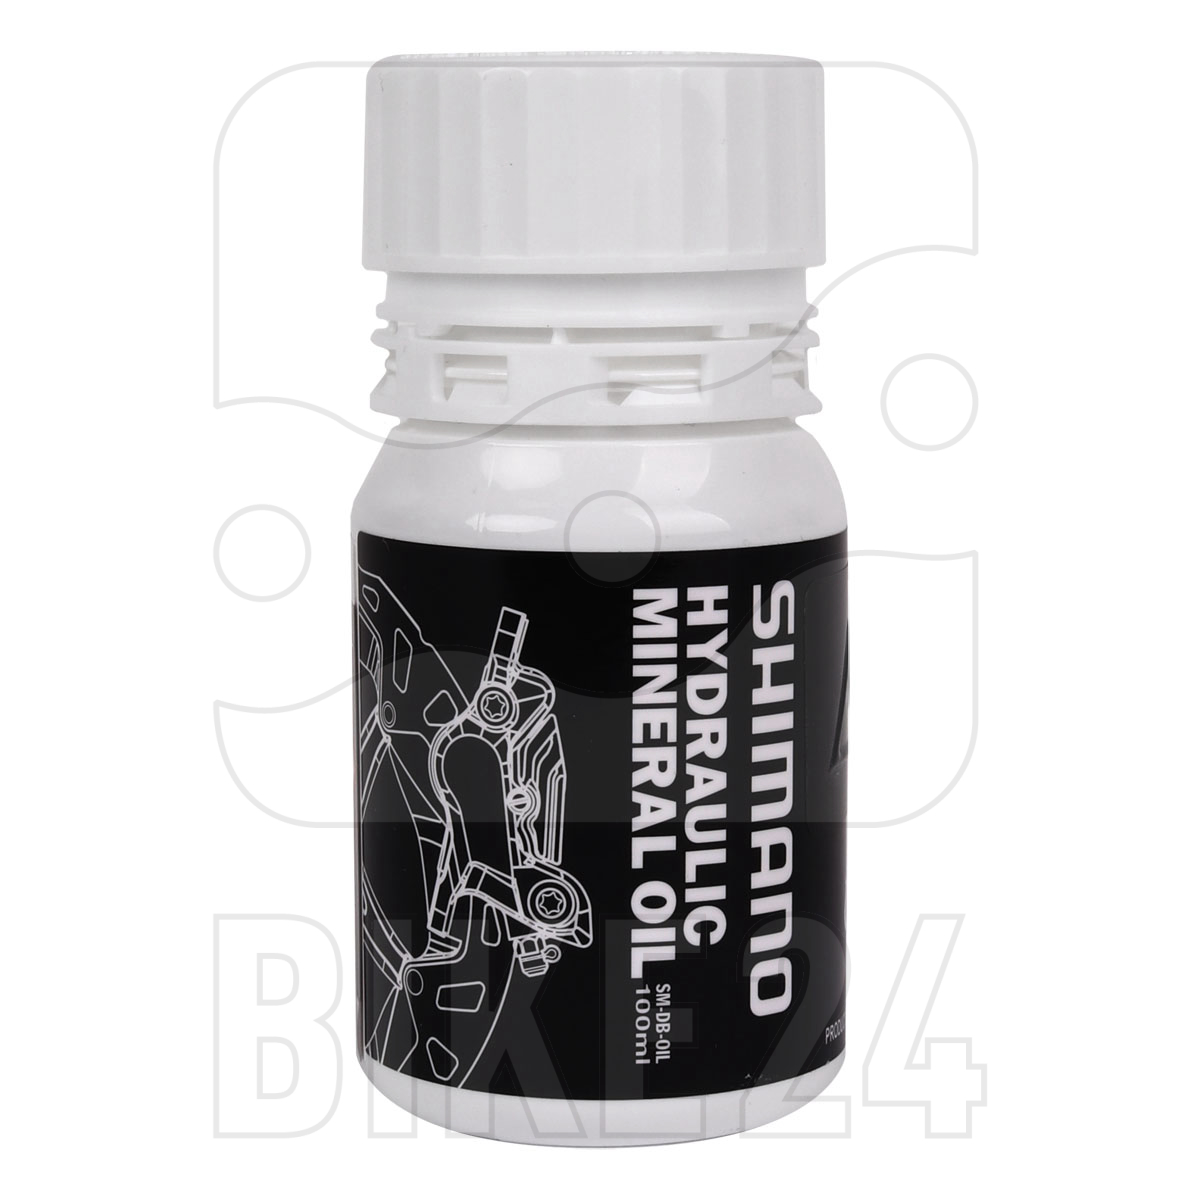 Produktbild von Shimano Mineralöl für Hydraulische Scheibenbremsen - 100 ml